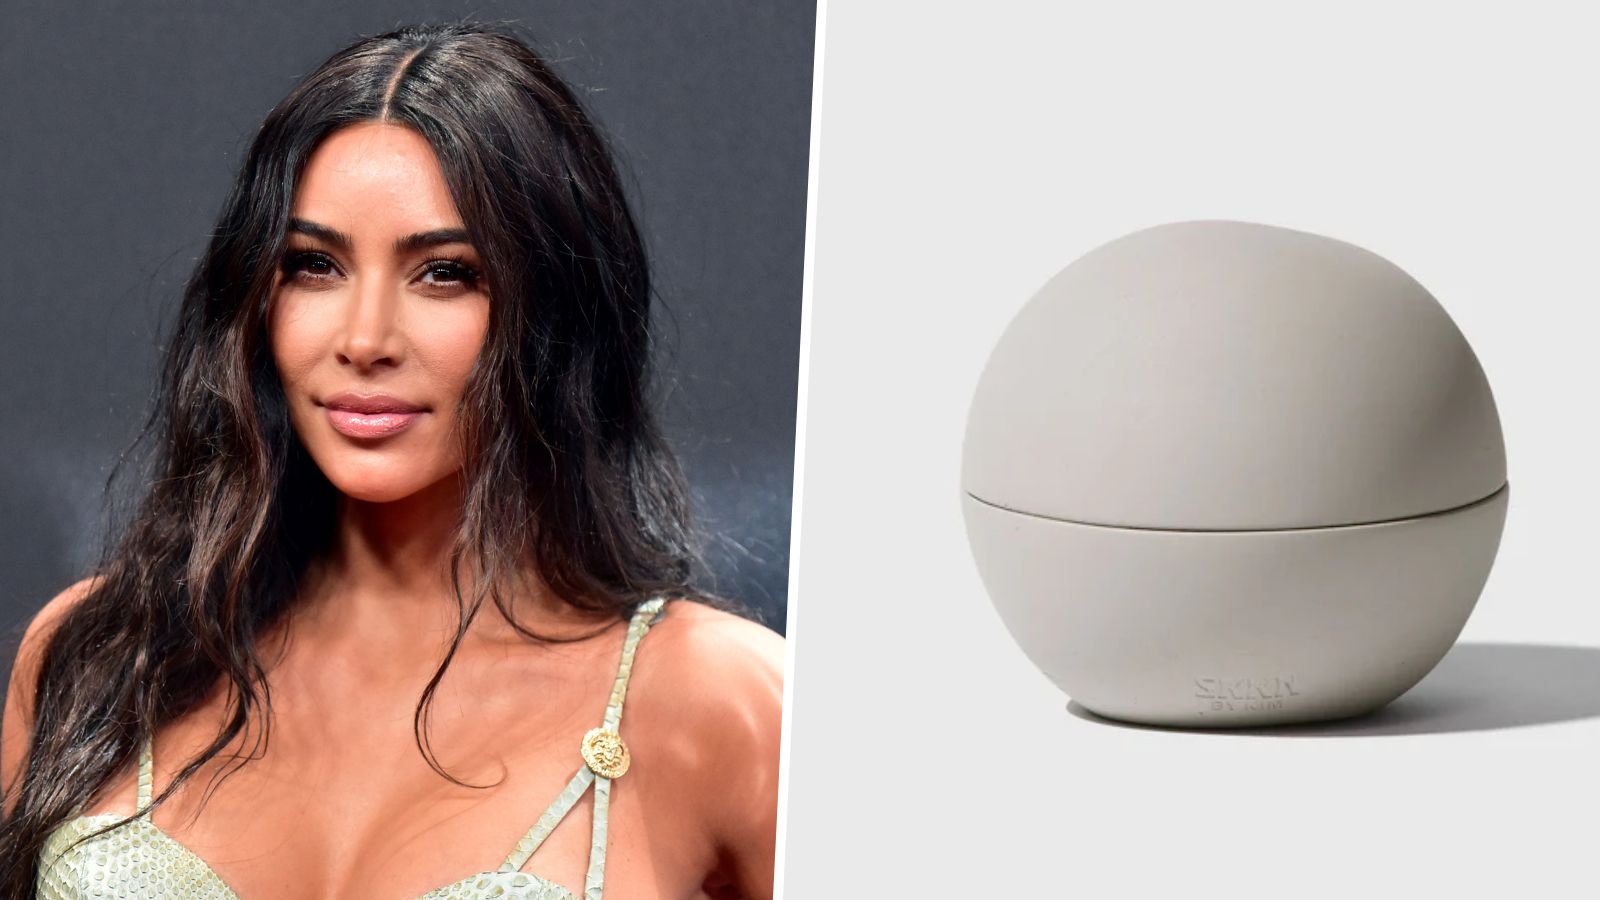 Kim Kardashian says she started Skims in her bathtub